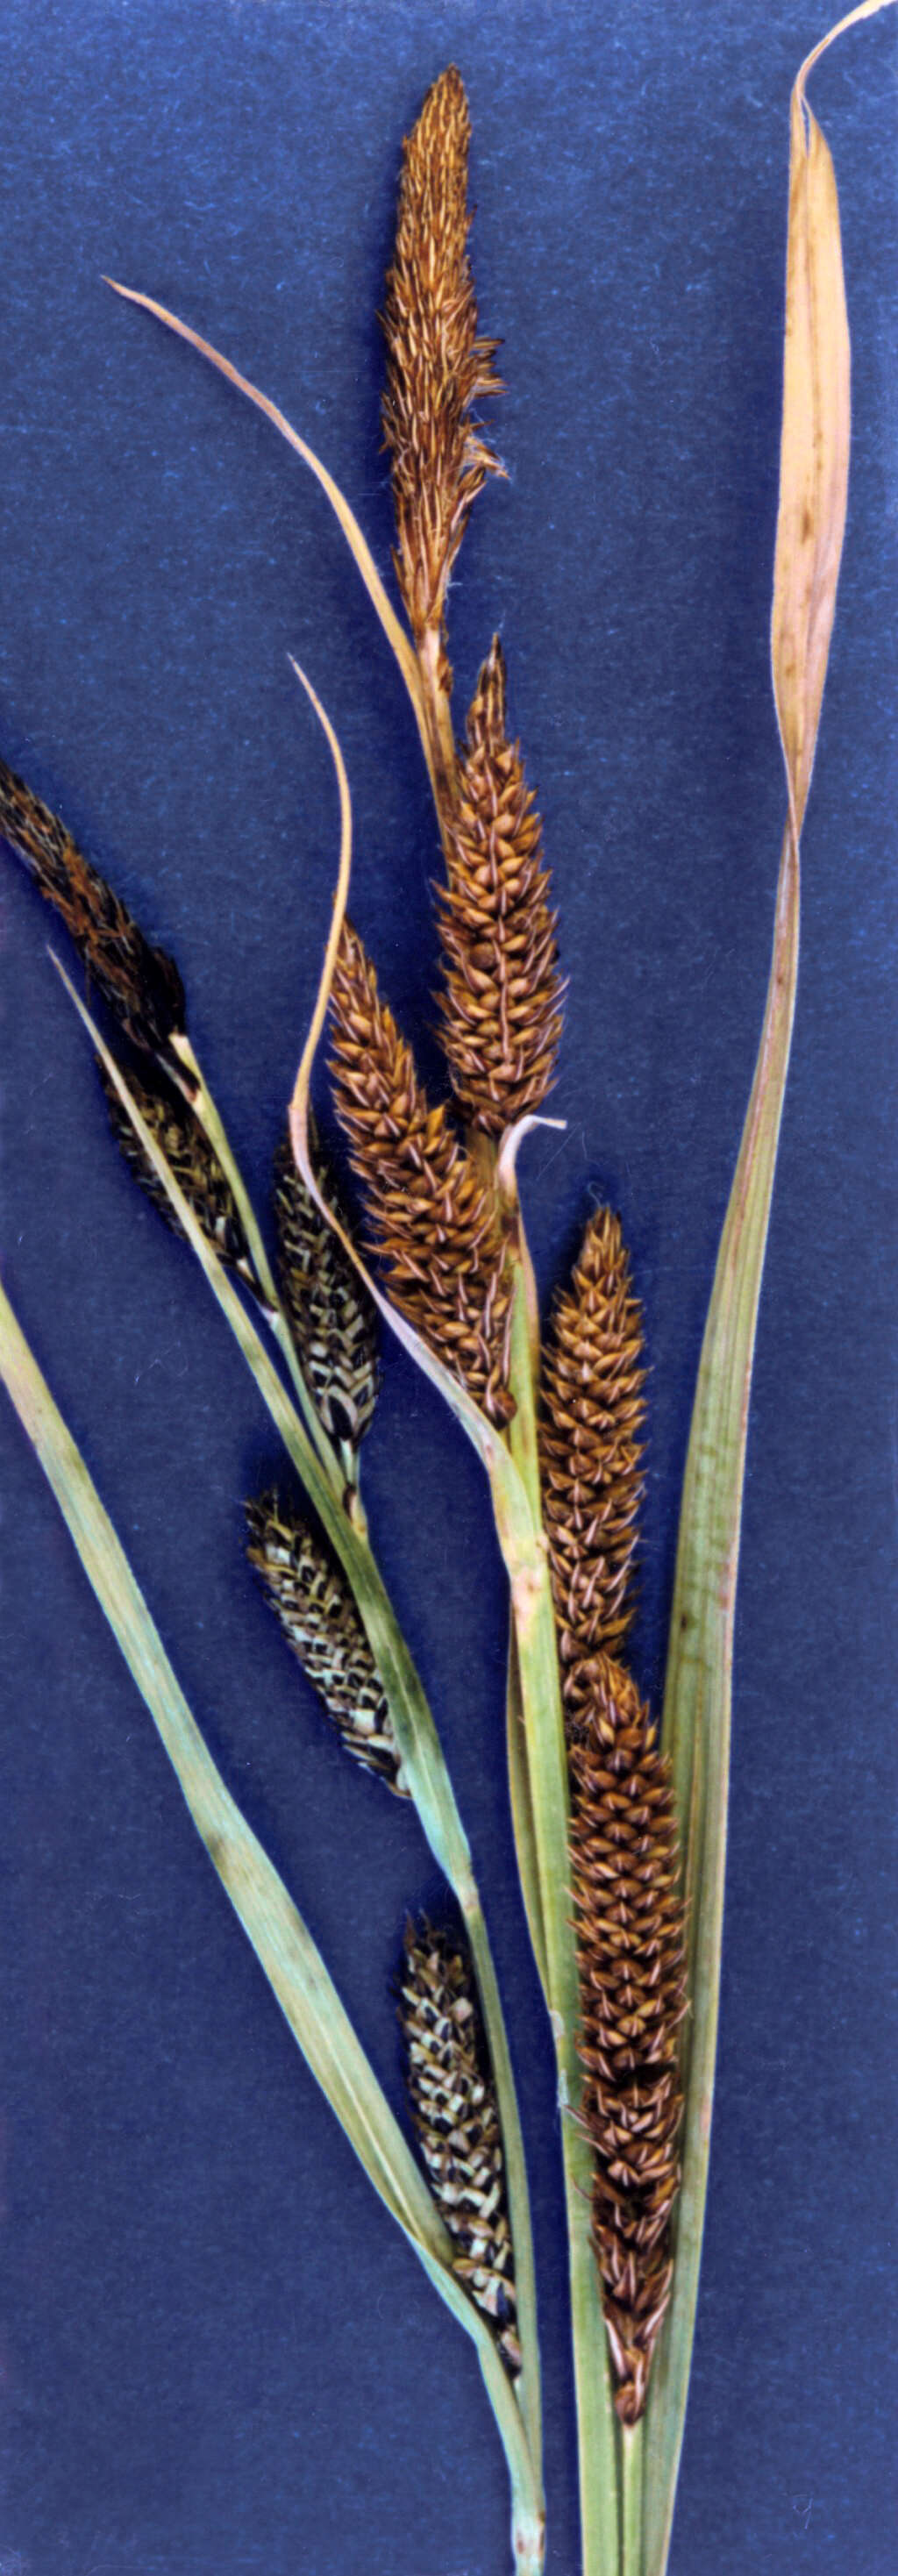 Image de Carex de nebraska